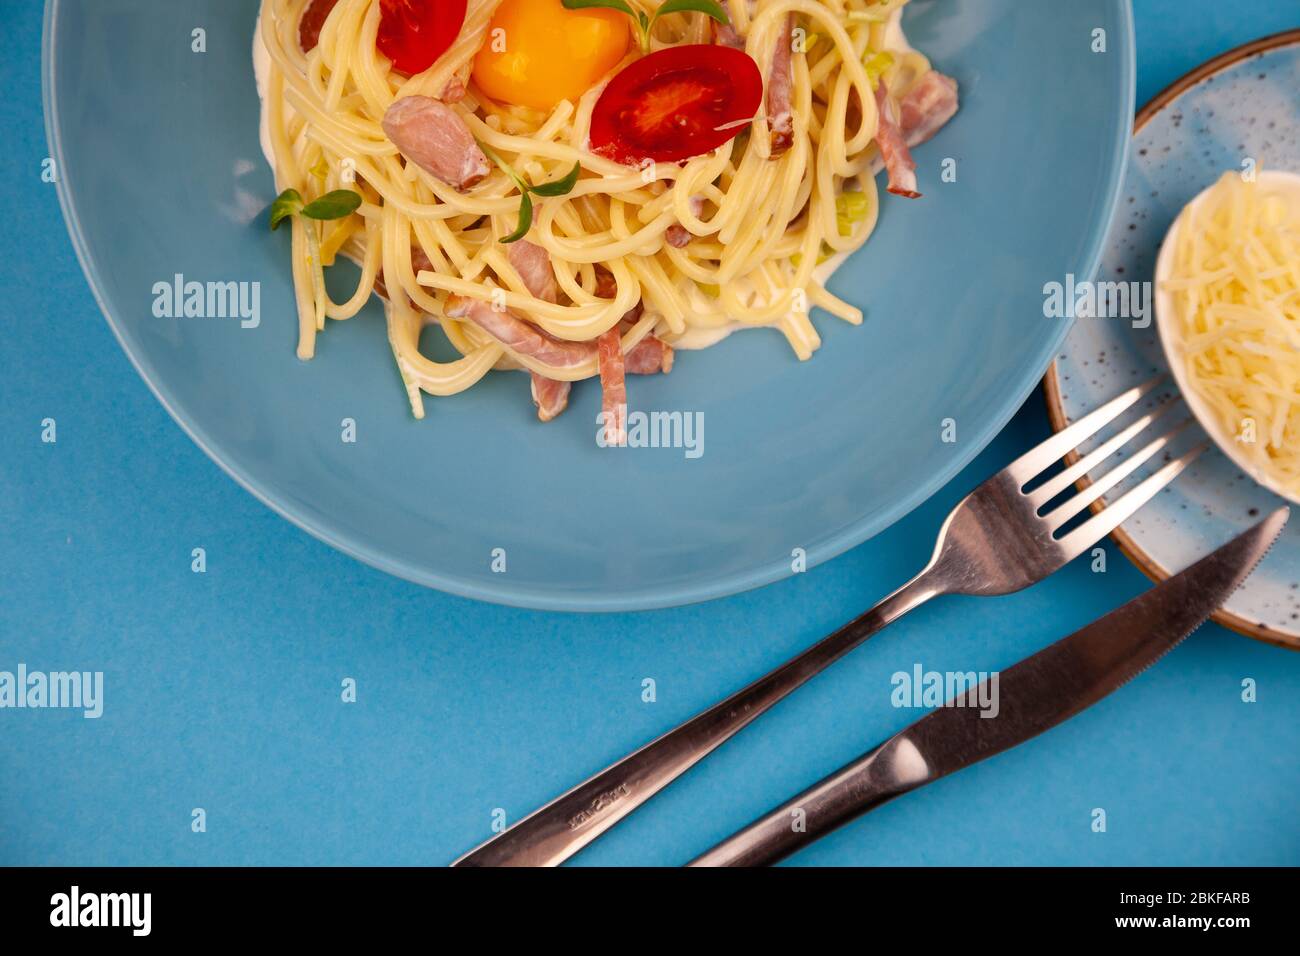 Pasta Carbonara - spaghetti con piccoli pezzi di pancetta, mescolati con salsa di uova, parmigiano. Piastra blu su sfondo blu. Macanons con uovo Foto Stock